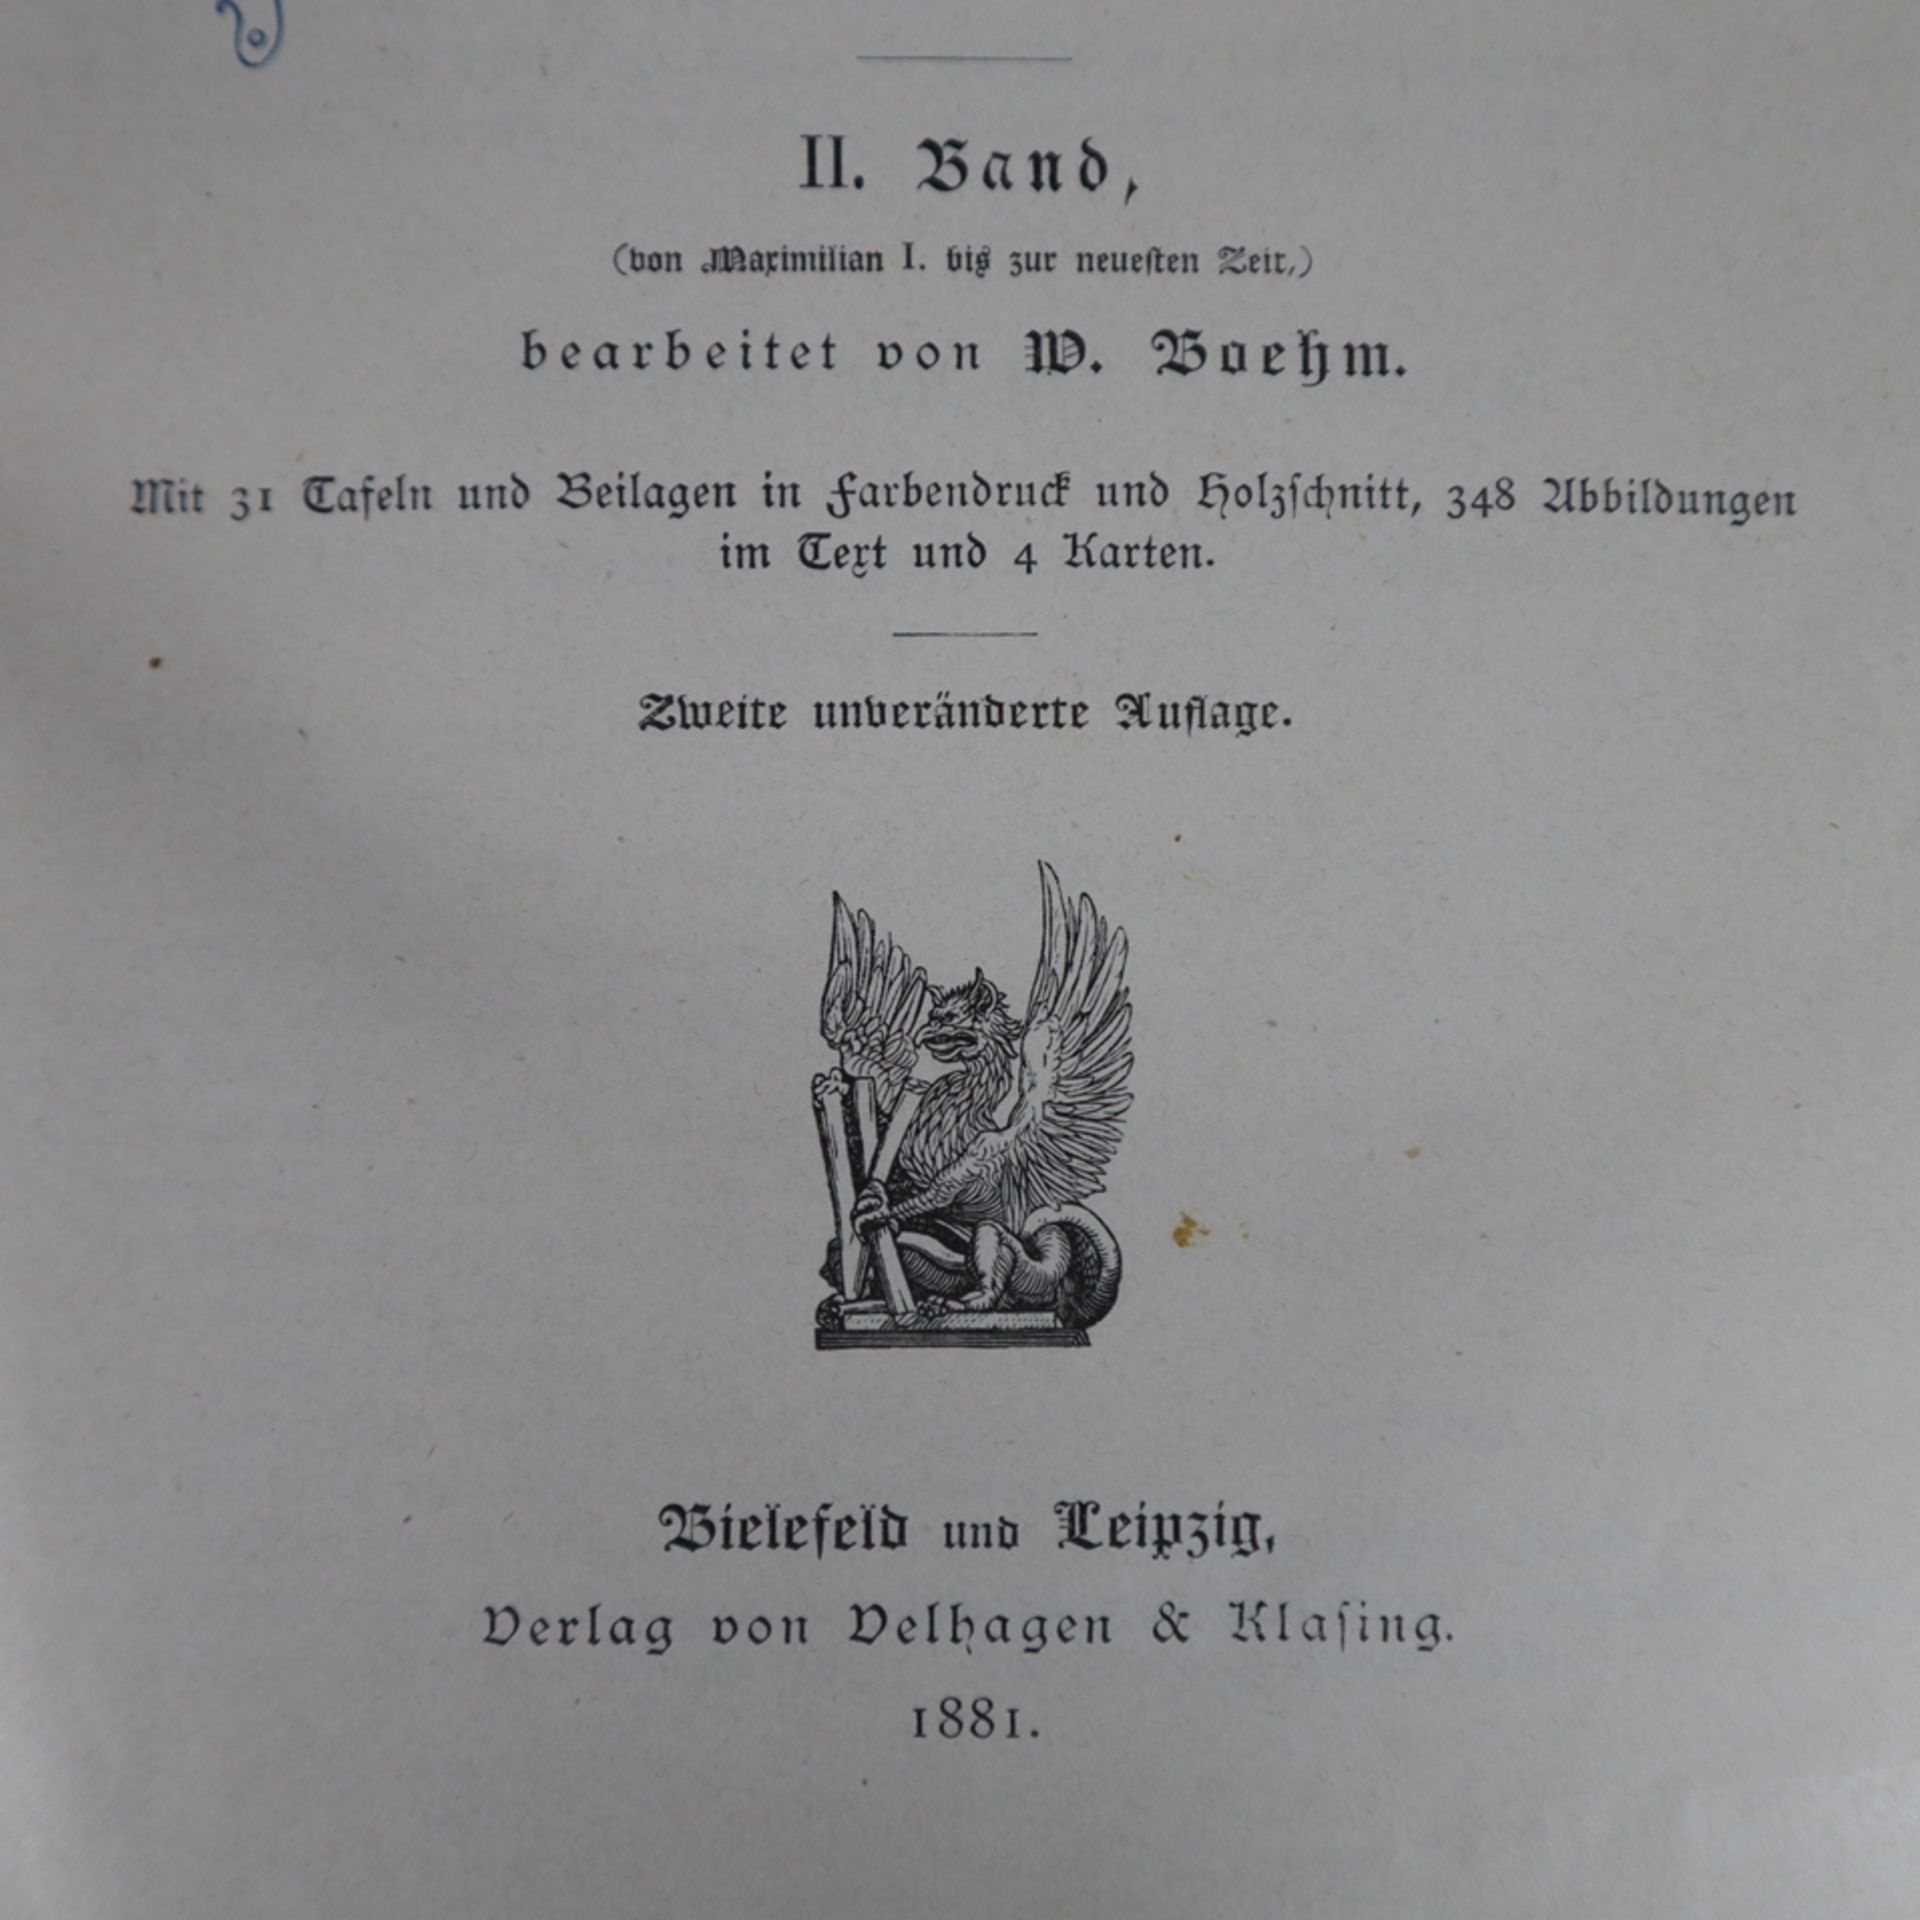 Deutsche Geschichte von L. Stacke - 2 Bände, zweite Auflage, Verlag von Velhagen & Klasing, Bielefe - Image 3 of 8